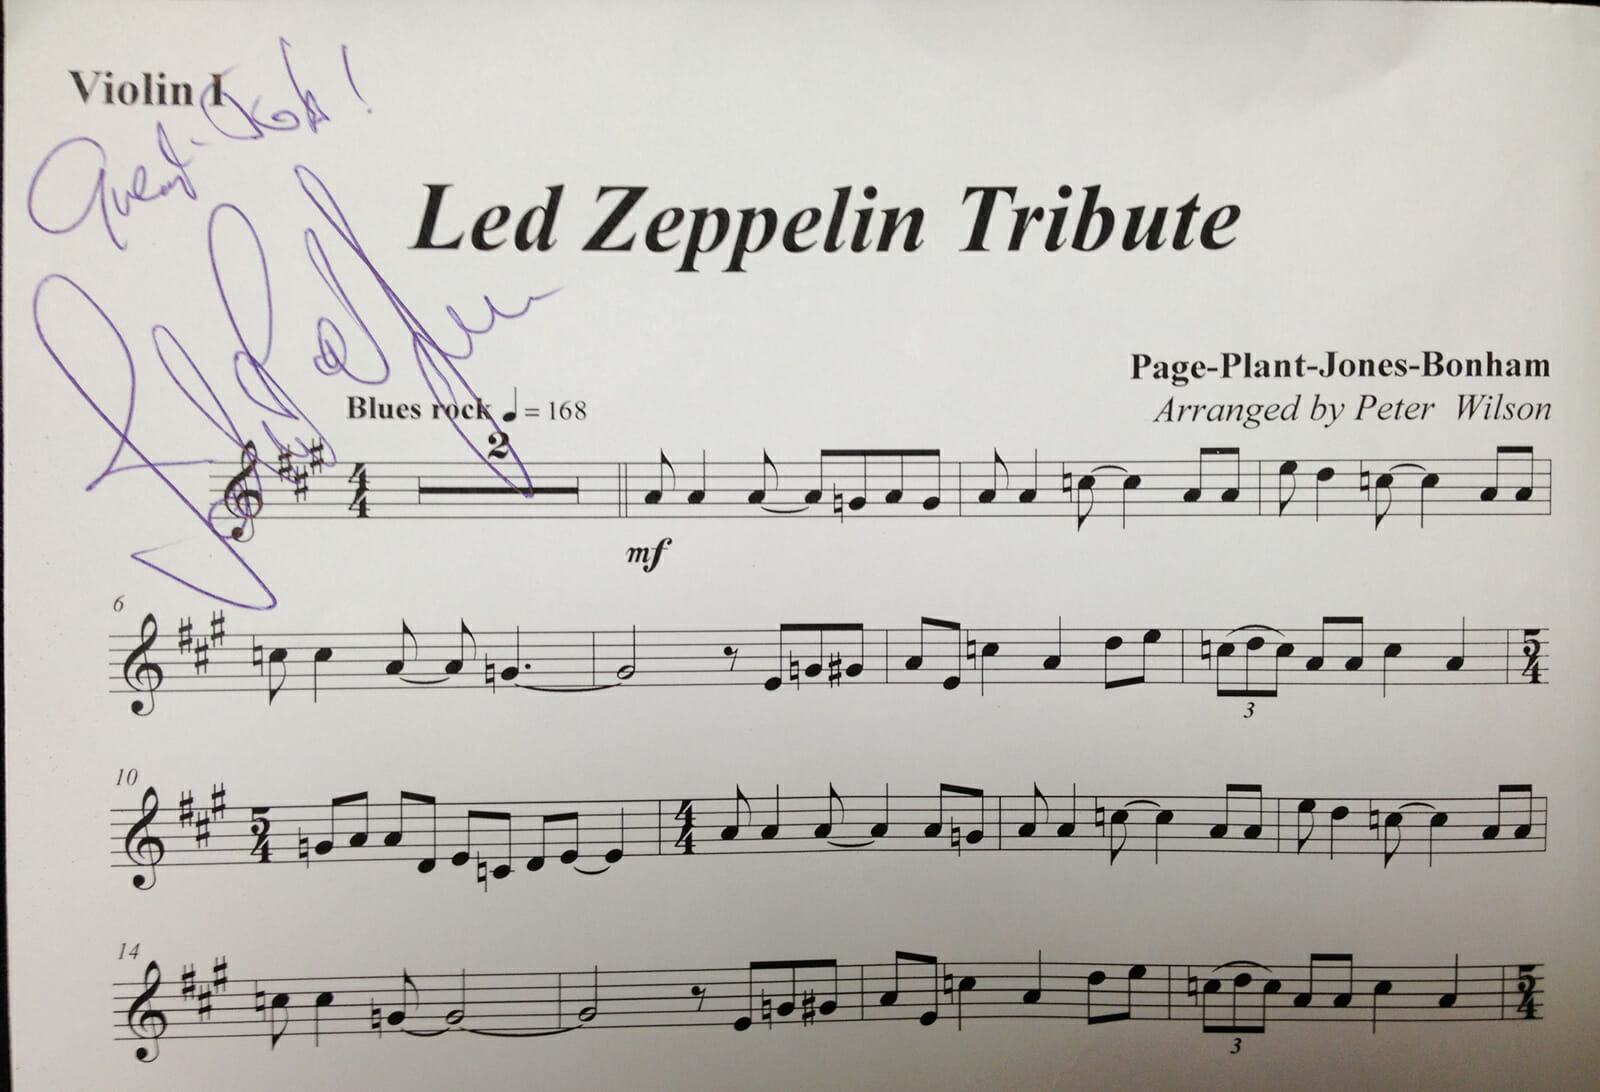 Sheet music signed by Led Zeppelin's John Paul Jones